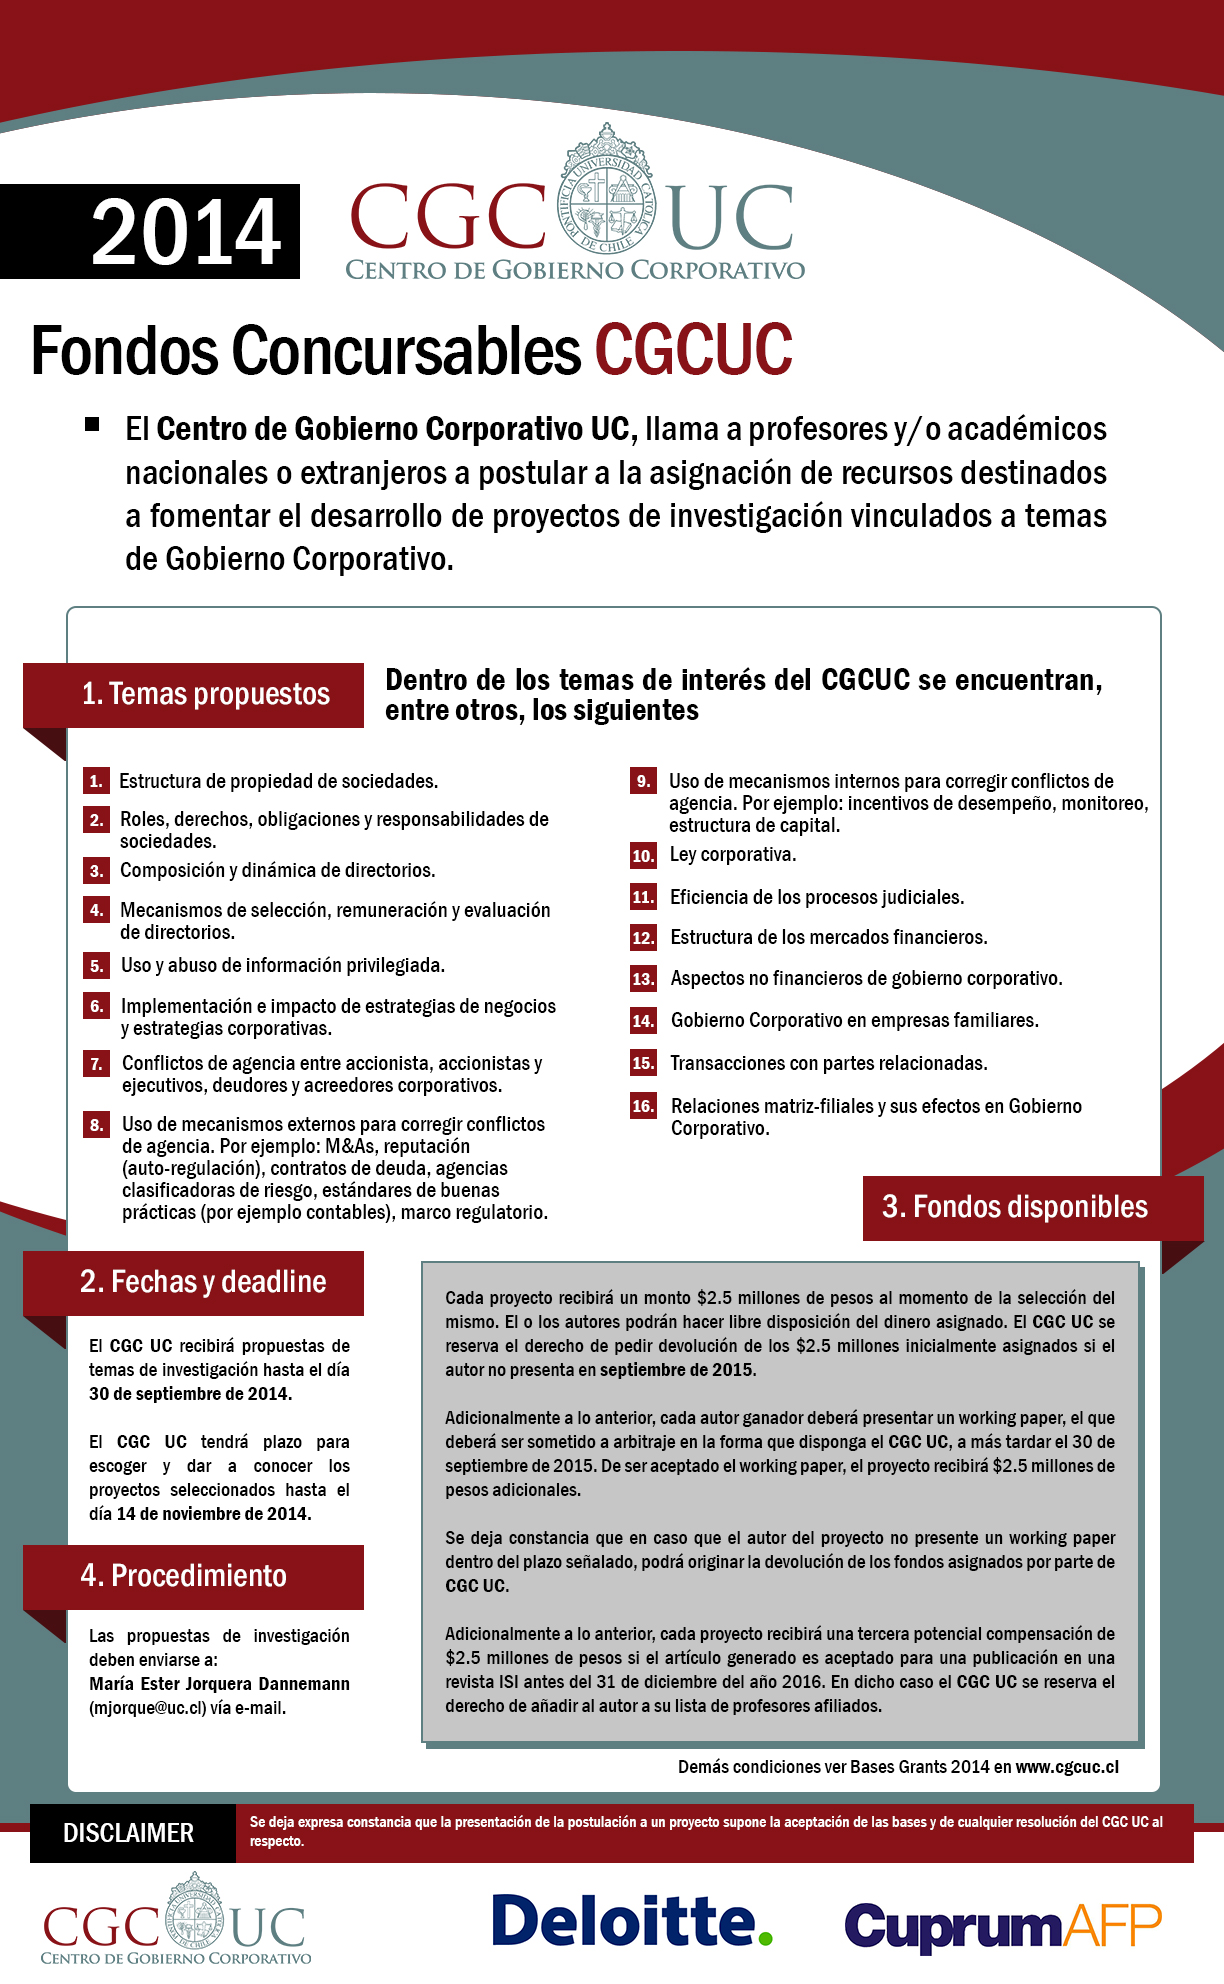 convocatoria-fondos-concursables-CGCUC-2014-afiche